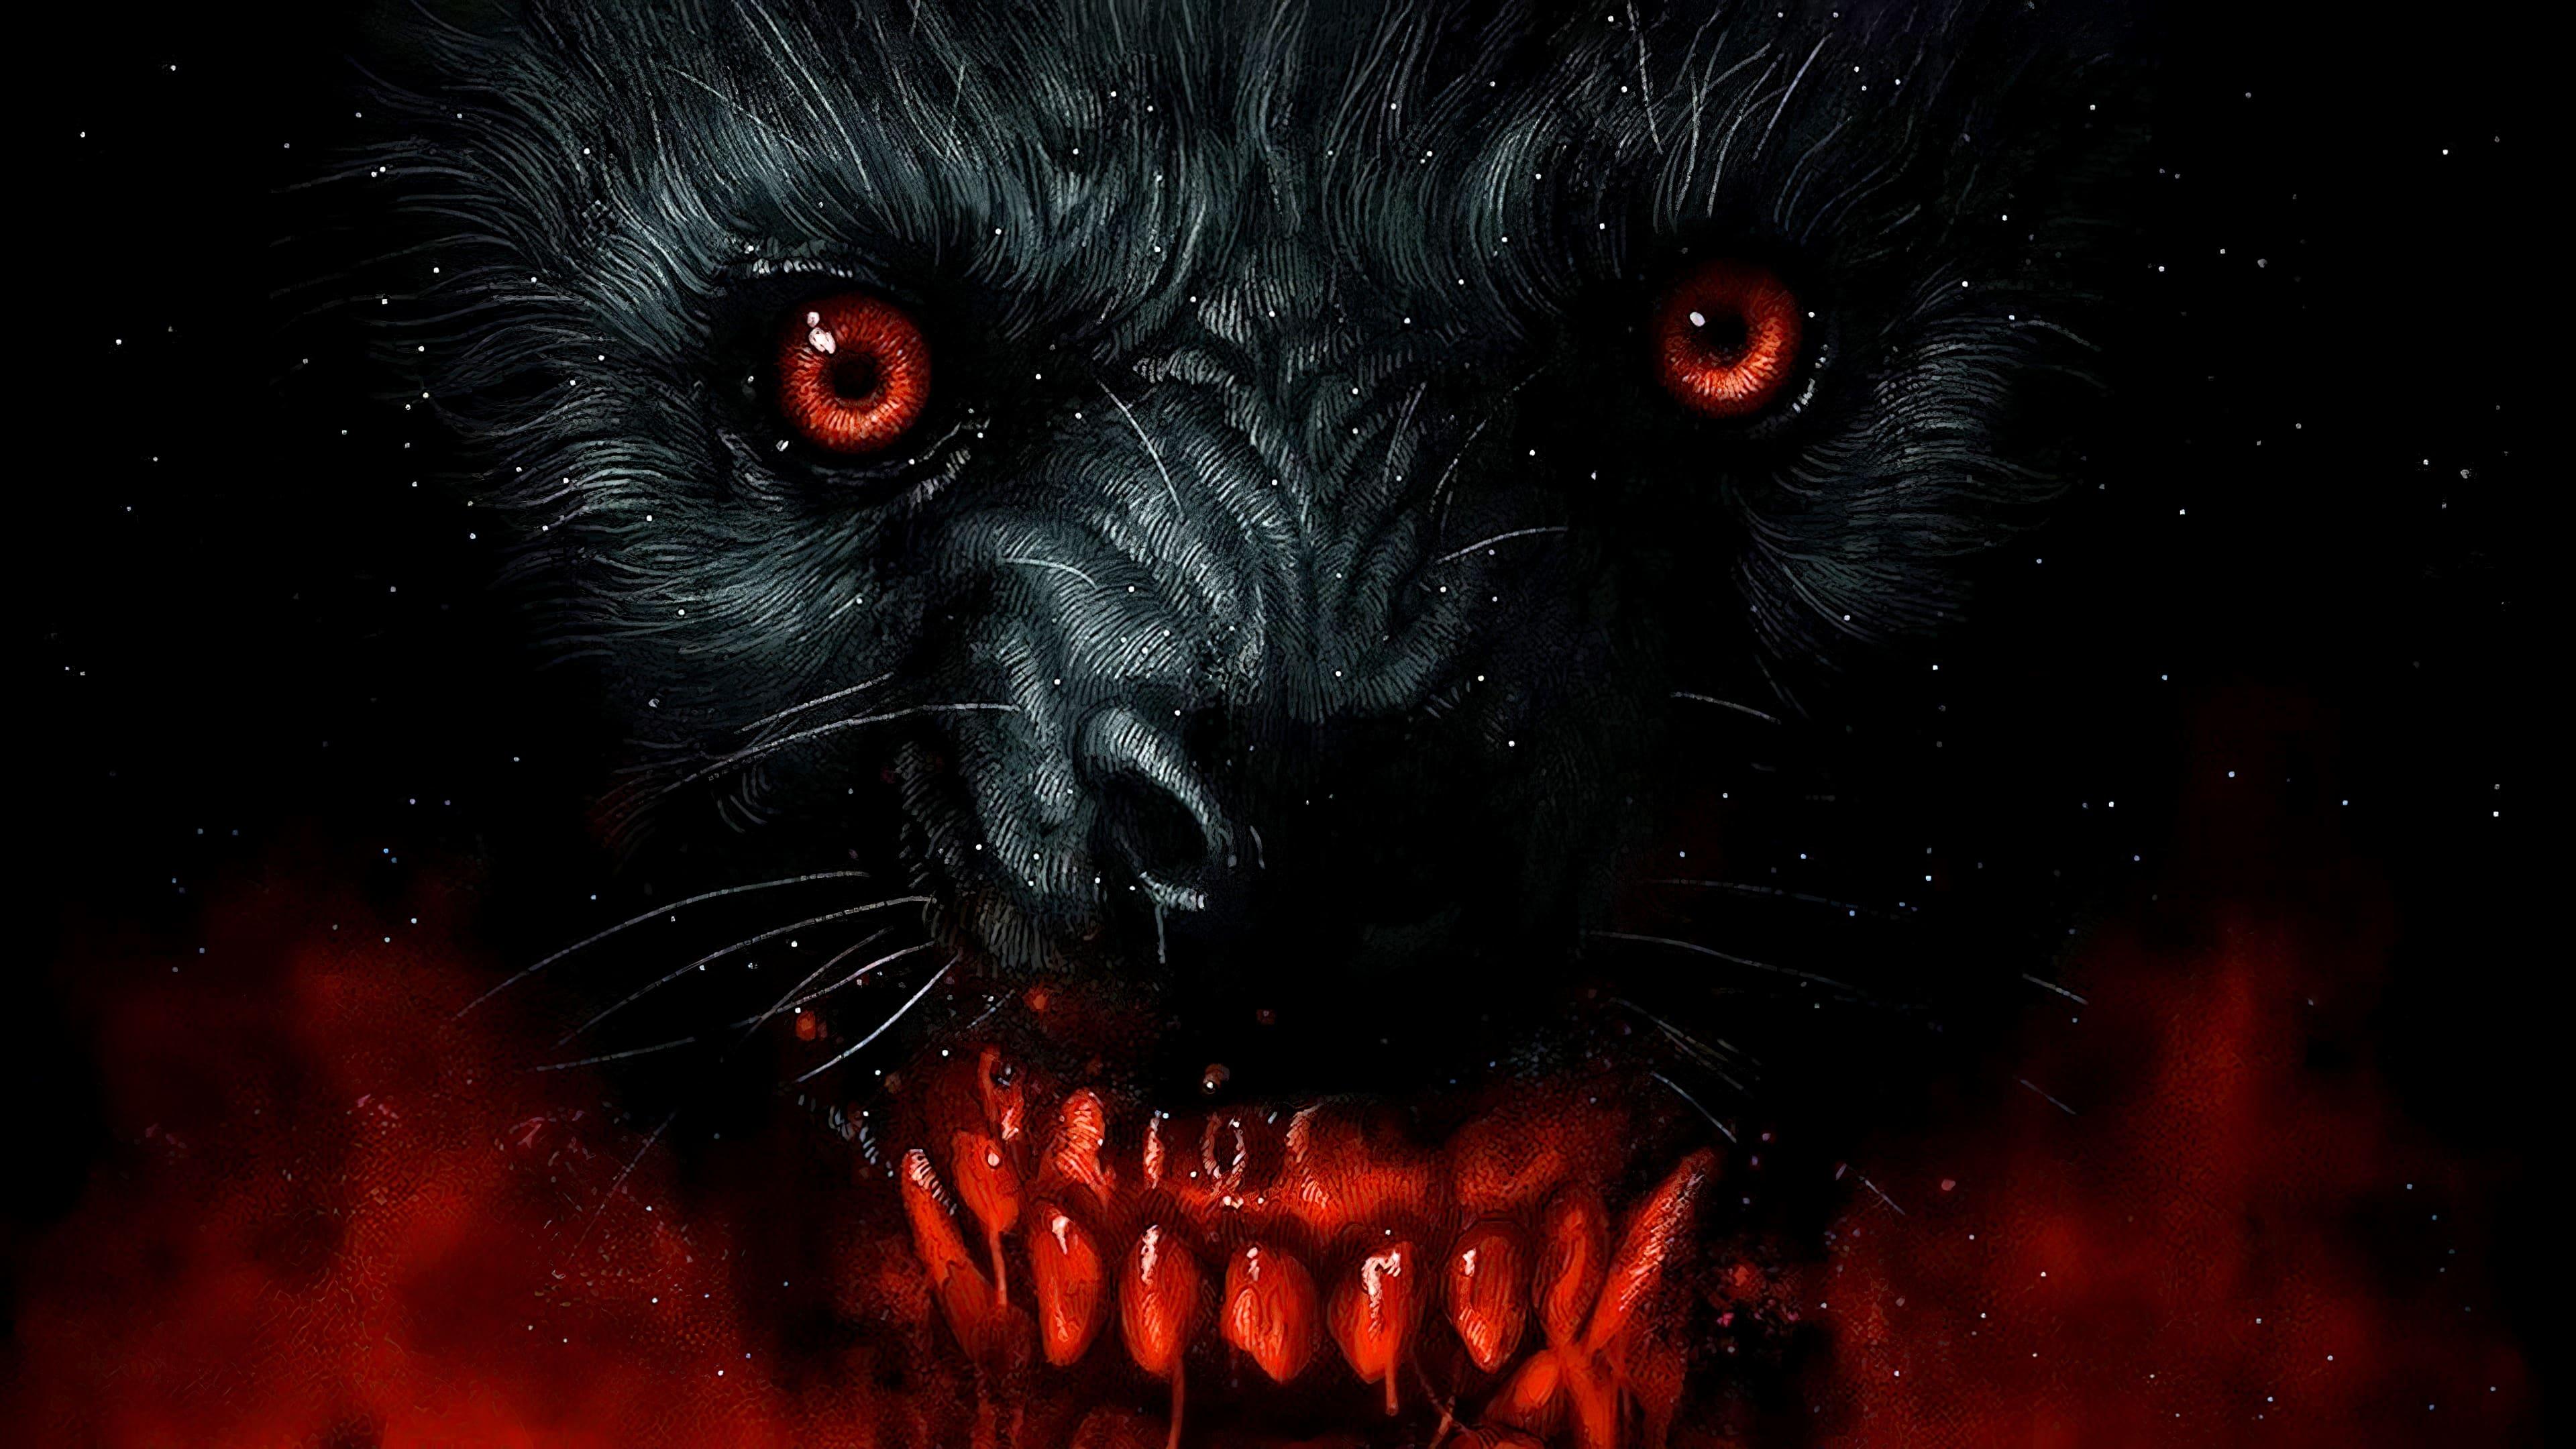 An American Werewolf in London backdrop